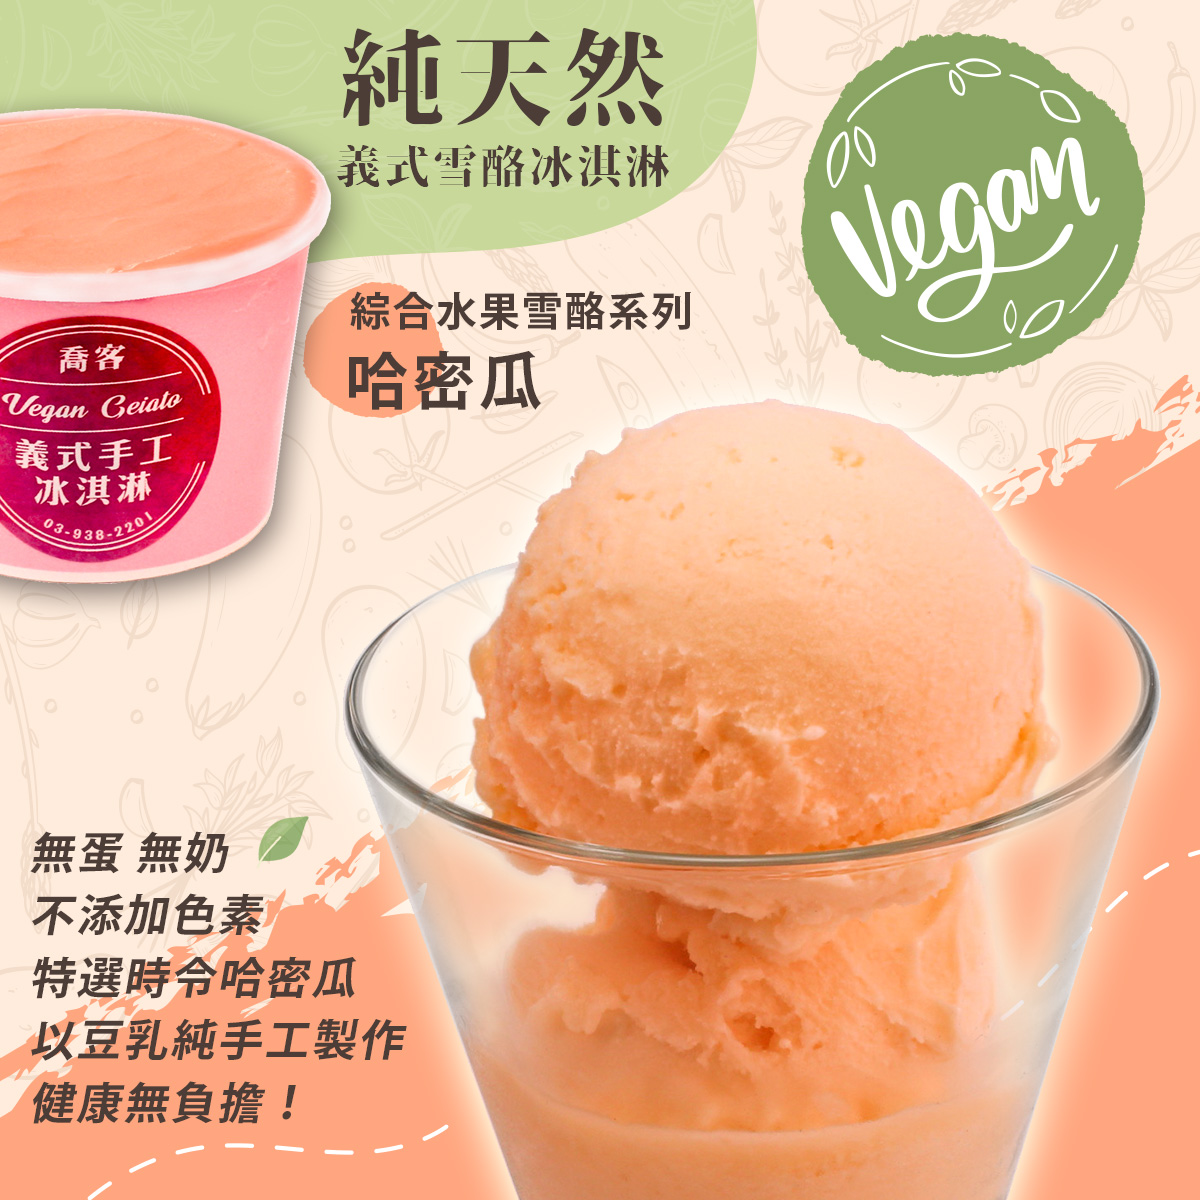 【喬客】水果雪酪系列-哈密瓜 冰淇淋